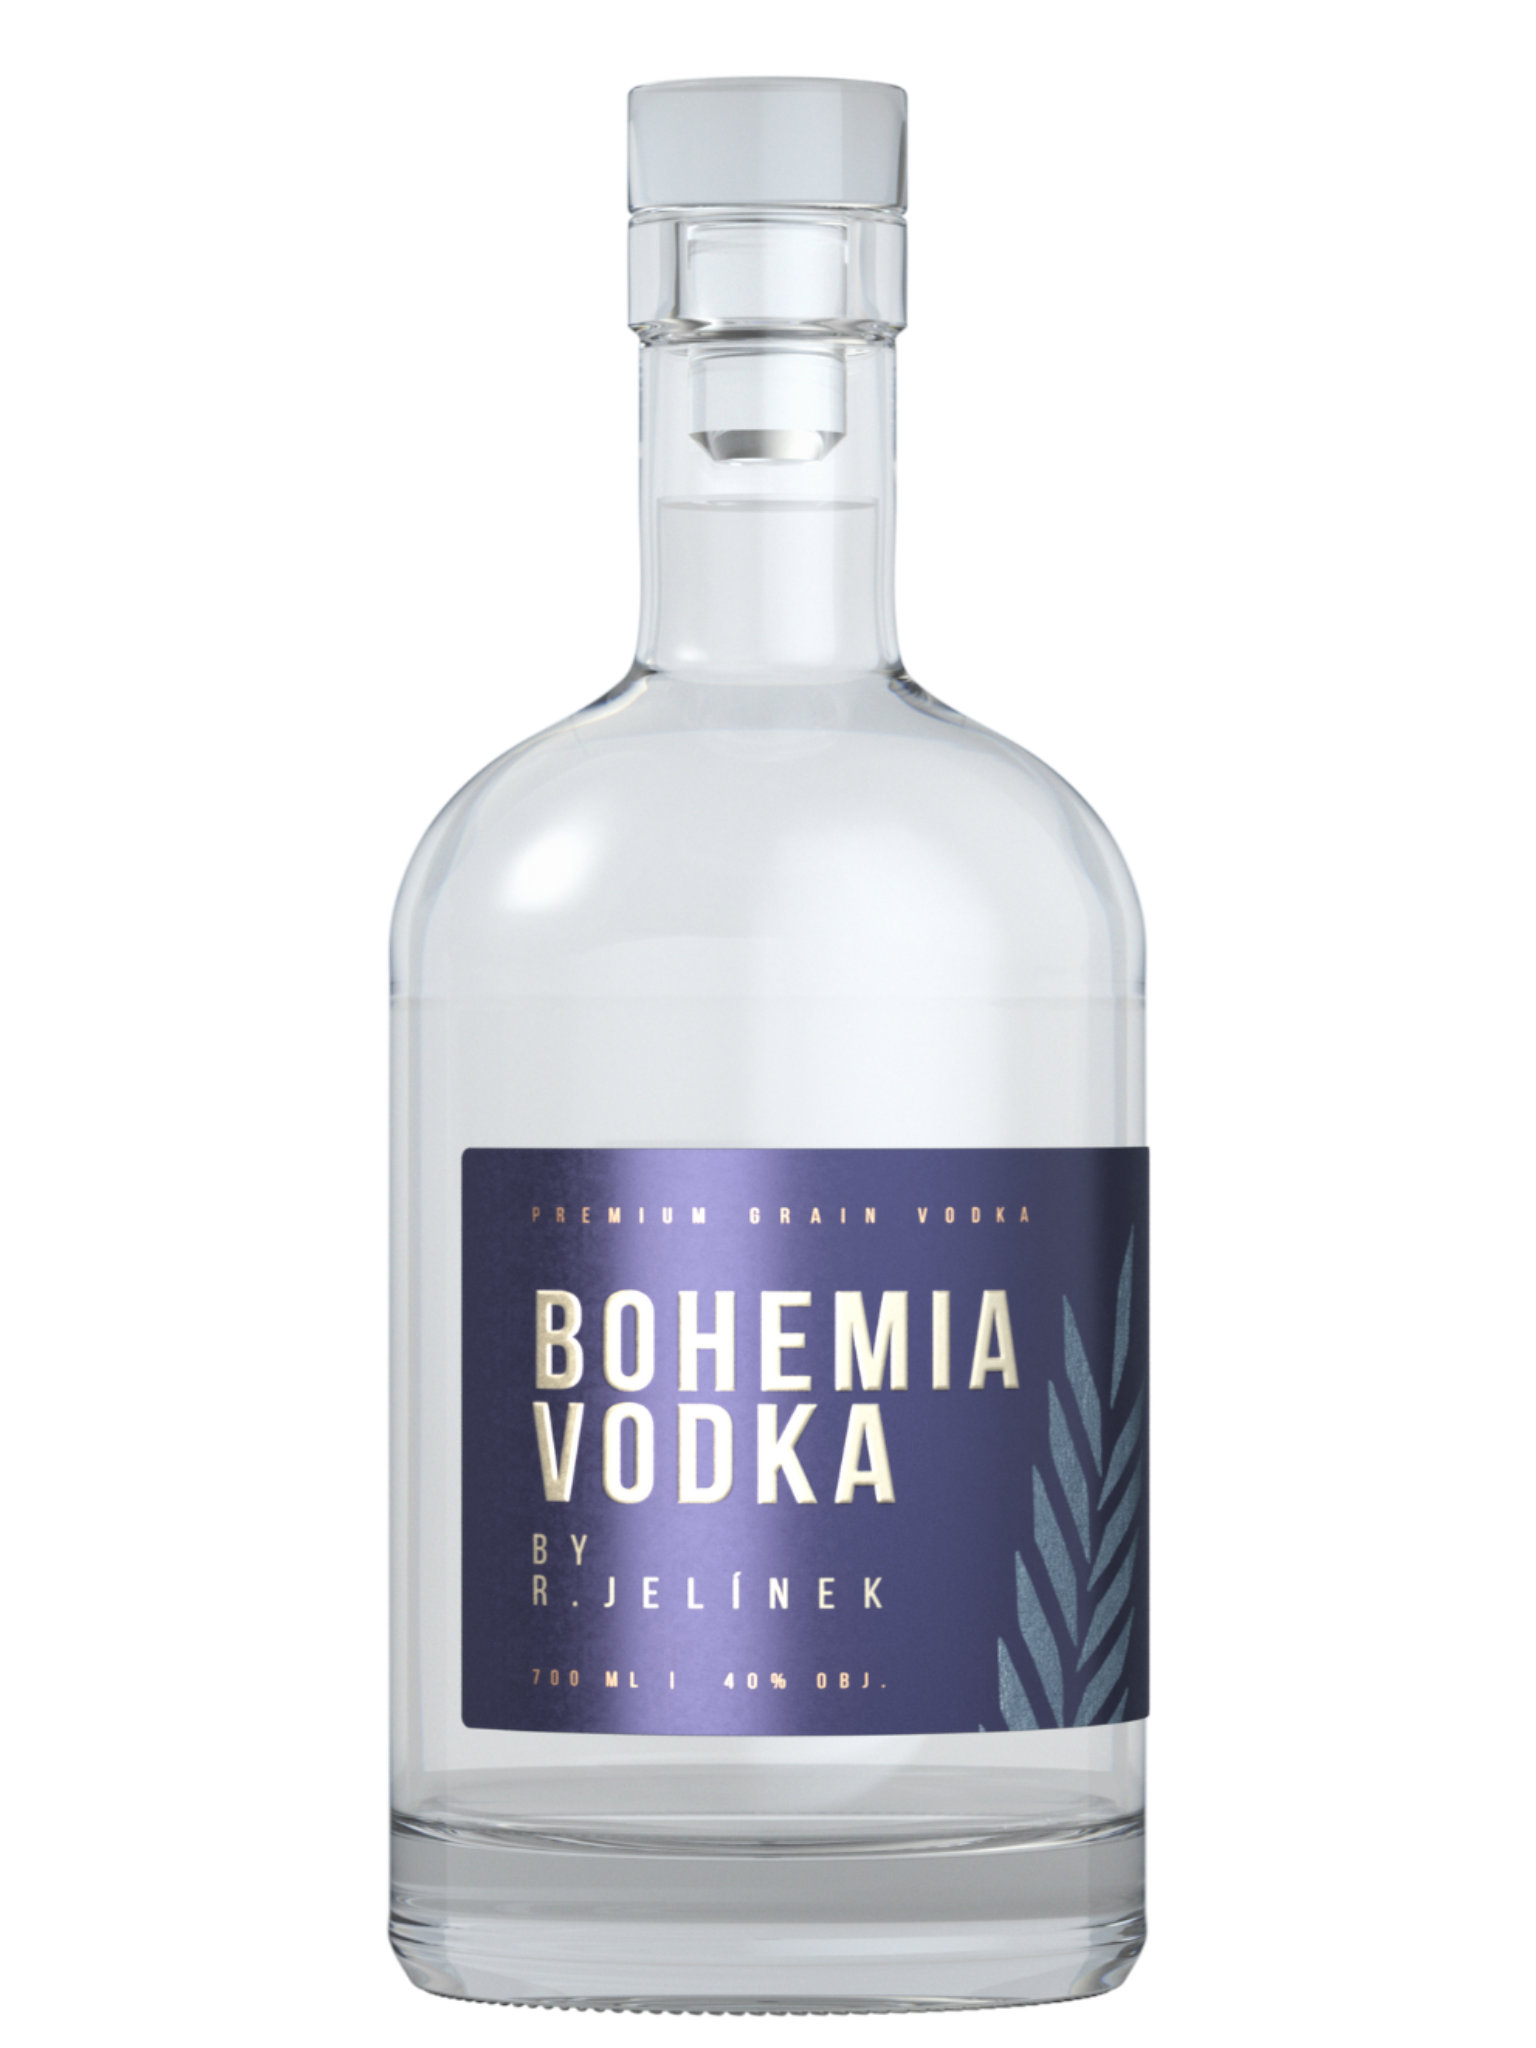 Belvedere Vodka 40% 0,7 l (holá láhev) od 699 Kč - Heureka.cz